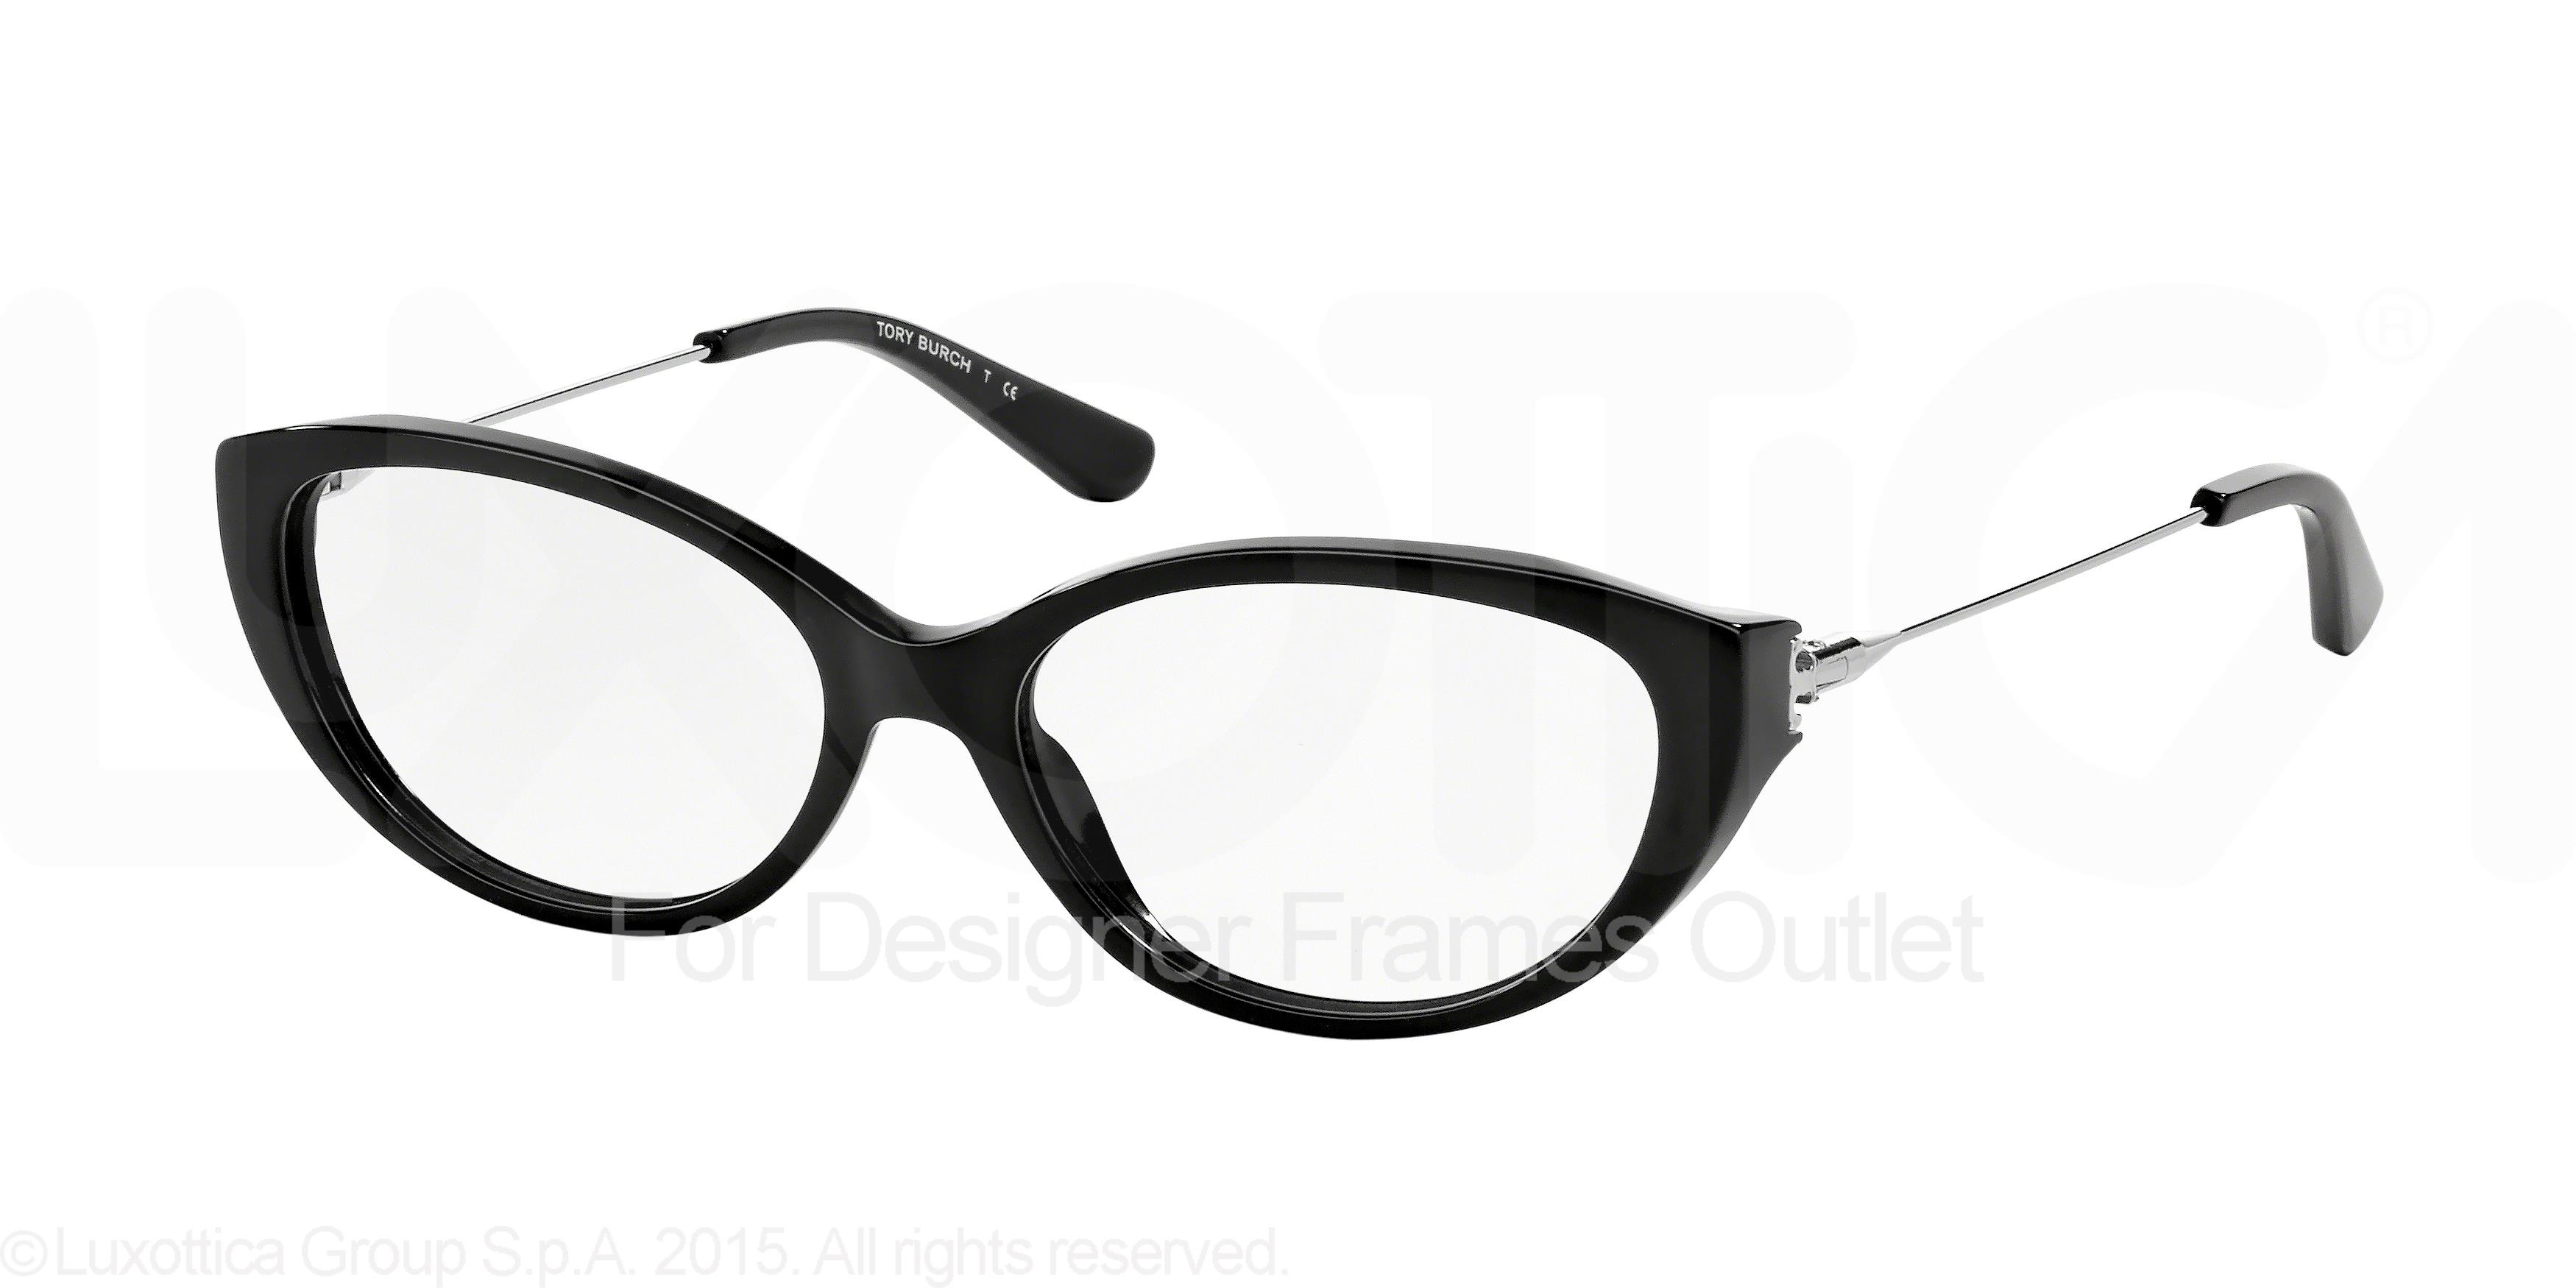 Designer Frames Outlet. Tory Burch Eyeglasses TY2048